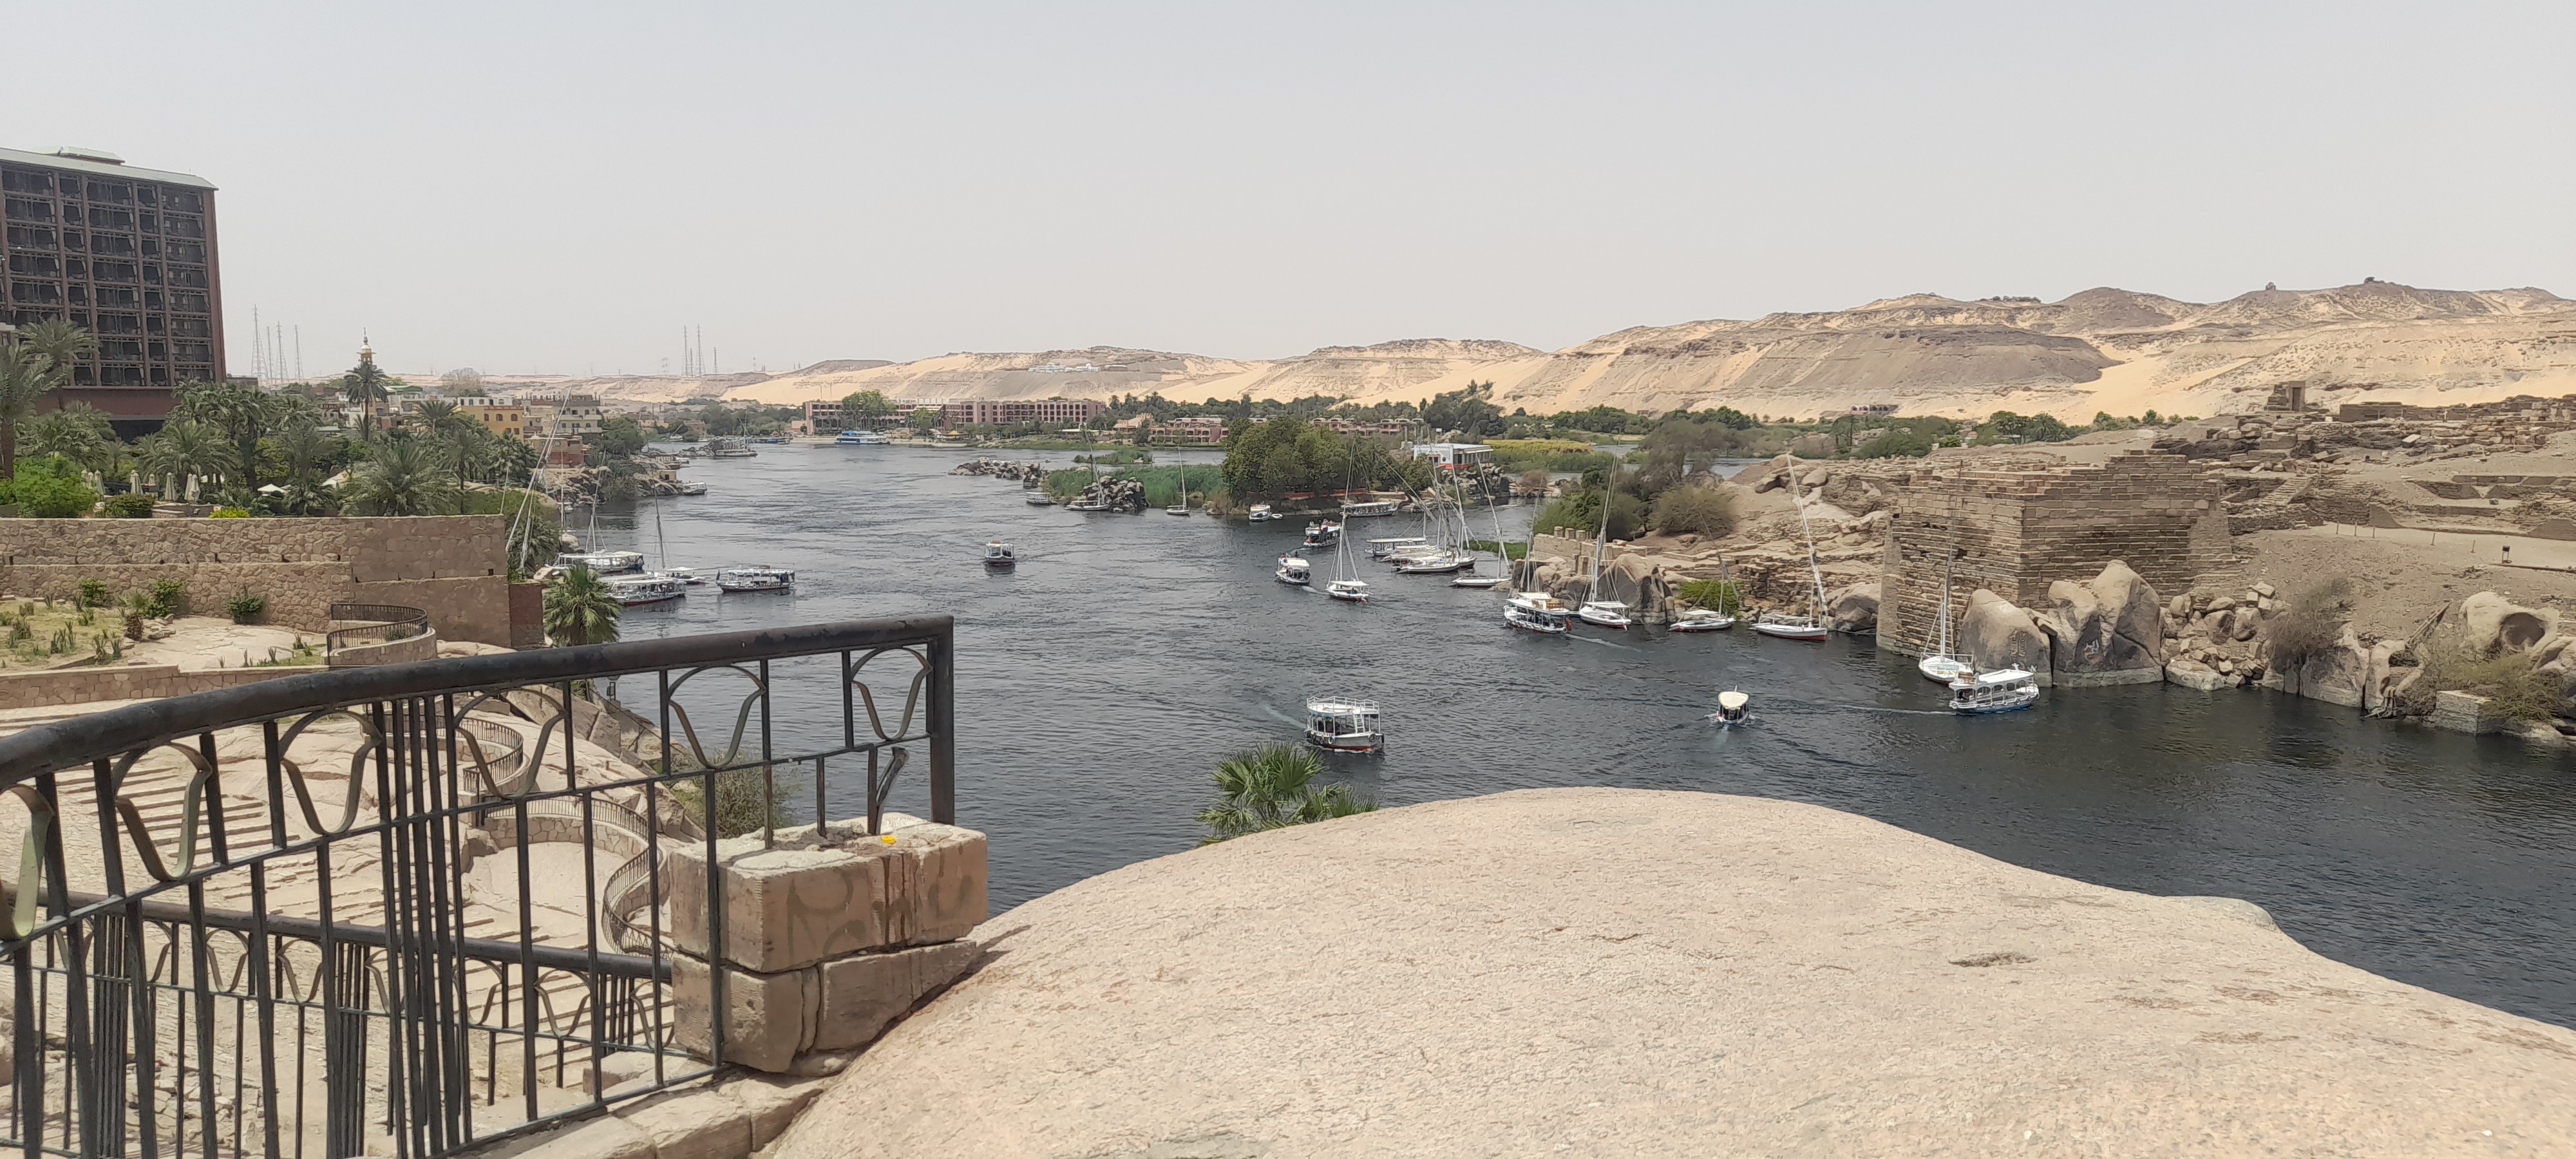 إطلالة مميزة على النيل من حديقة الأميرة فريال بمحافظة أسوان (1)